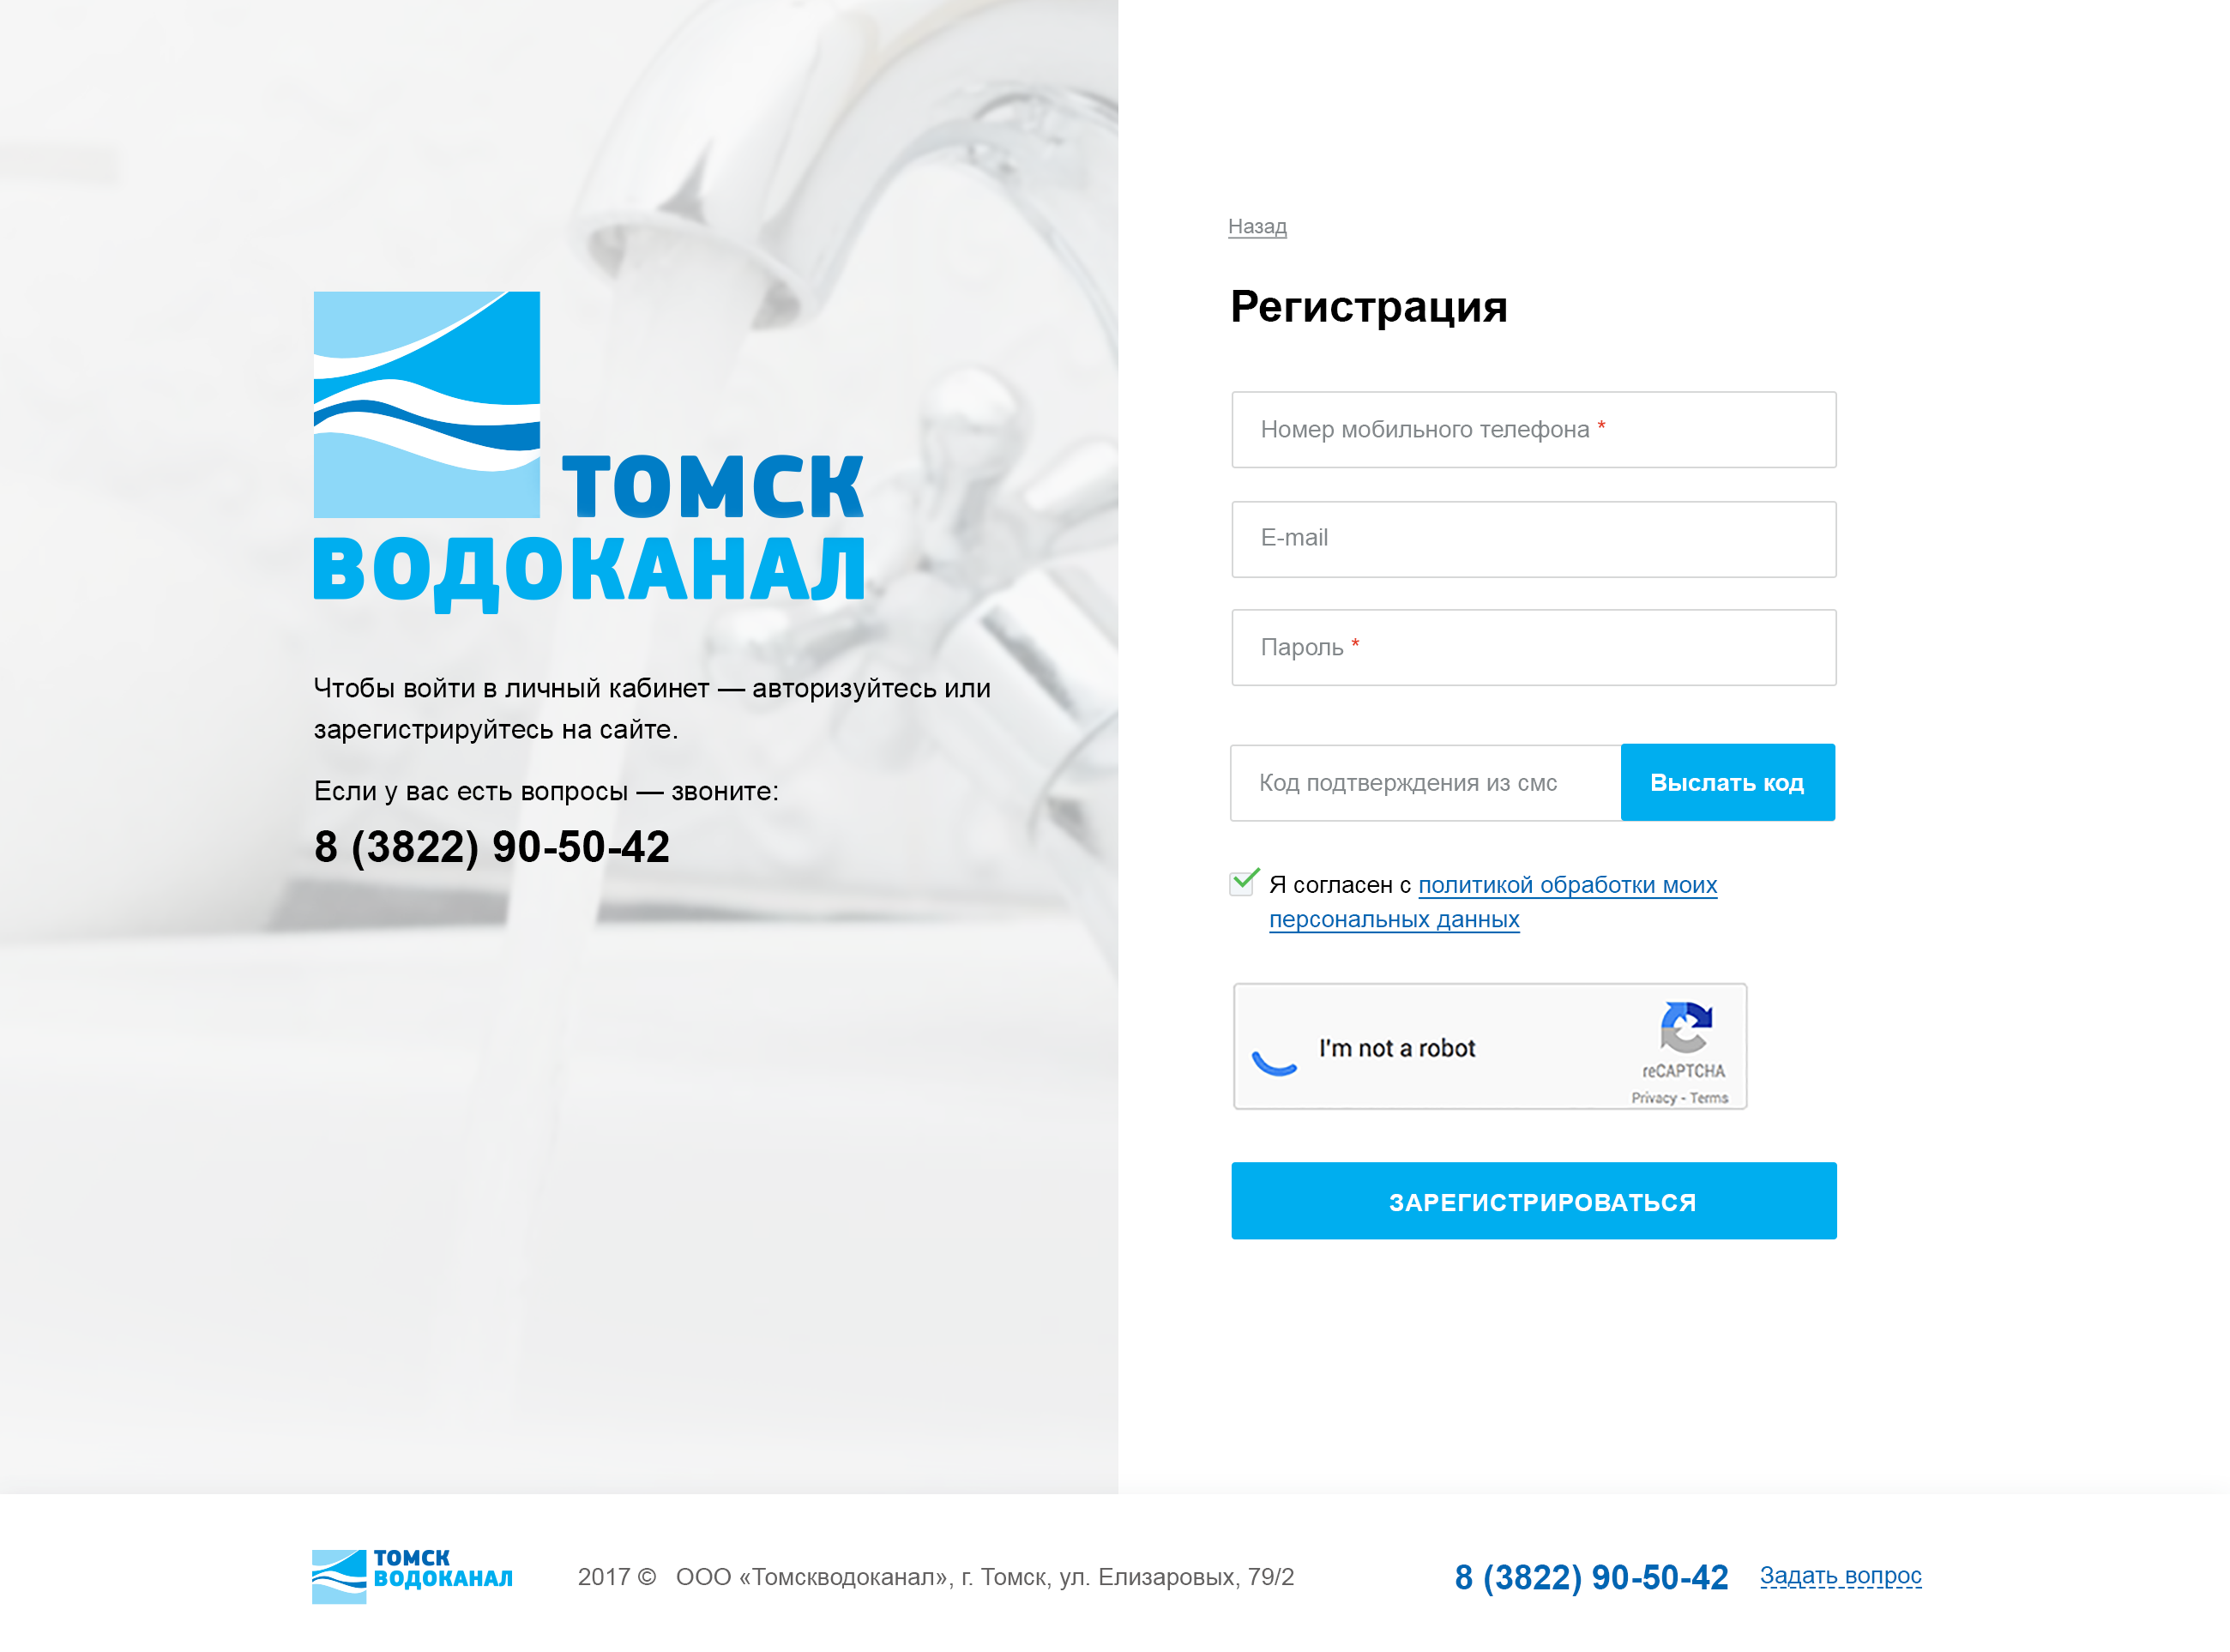 Tomsk.Vodokanal - sign in